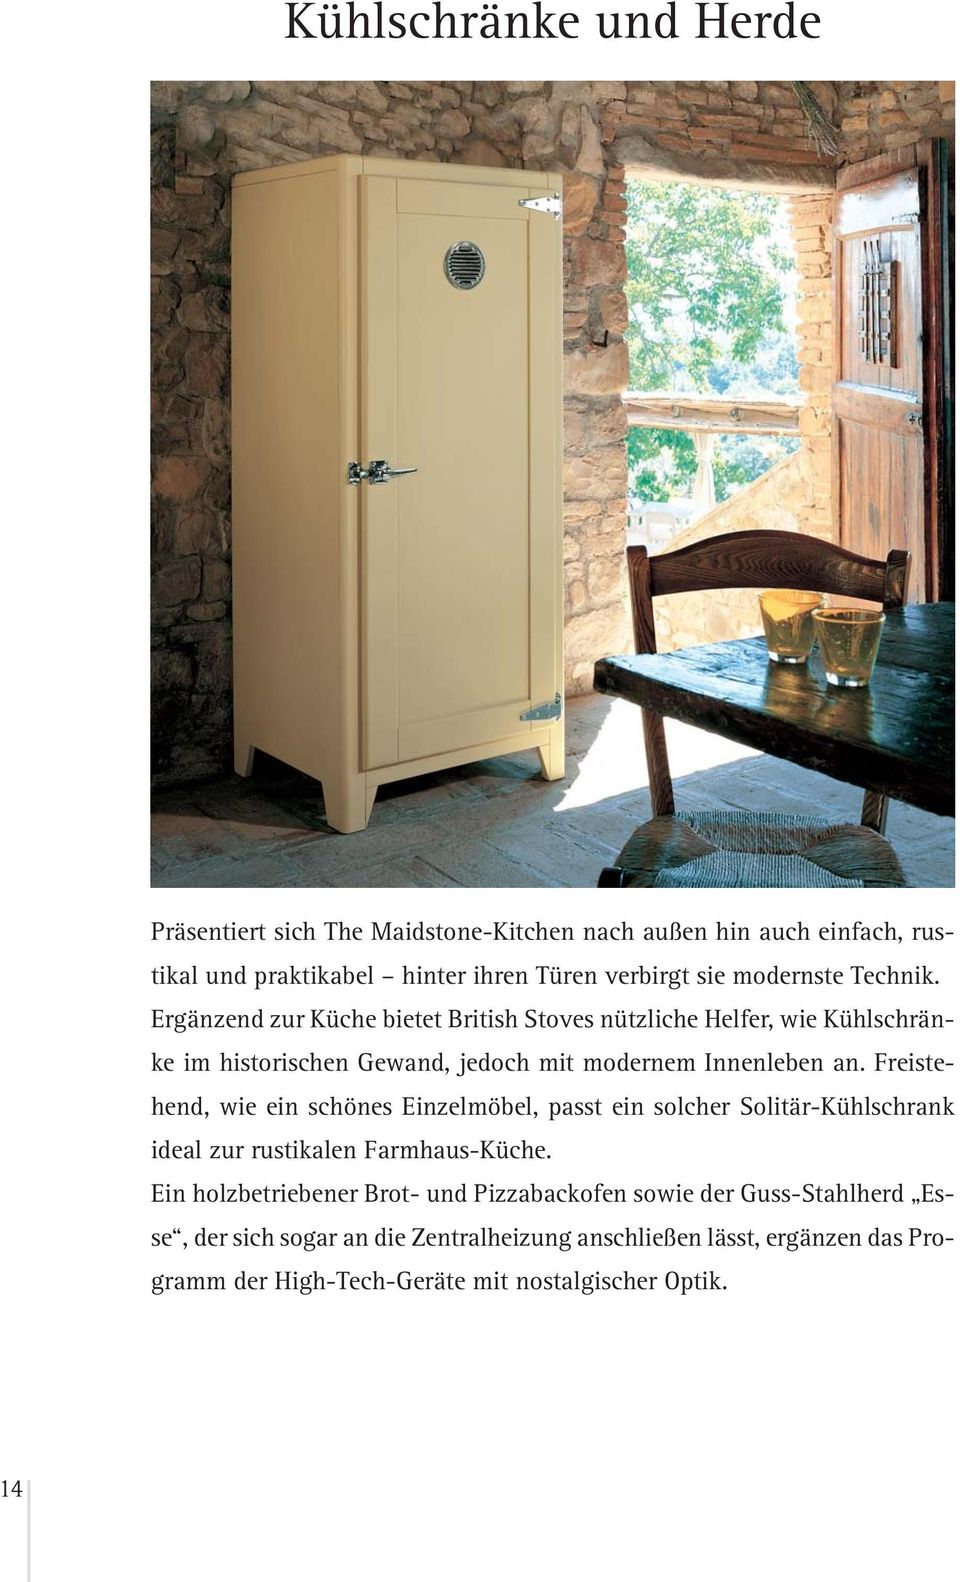 Freistehend, wie ein schönes Einzelmöbel, passt ein solcher Solitär-Kühlschrank ideal zur rustikalen Farmhaus-Küche.